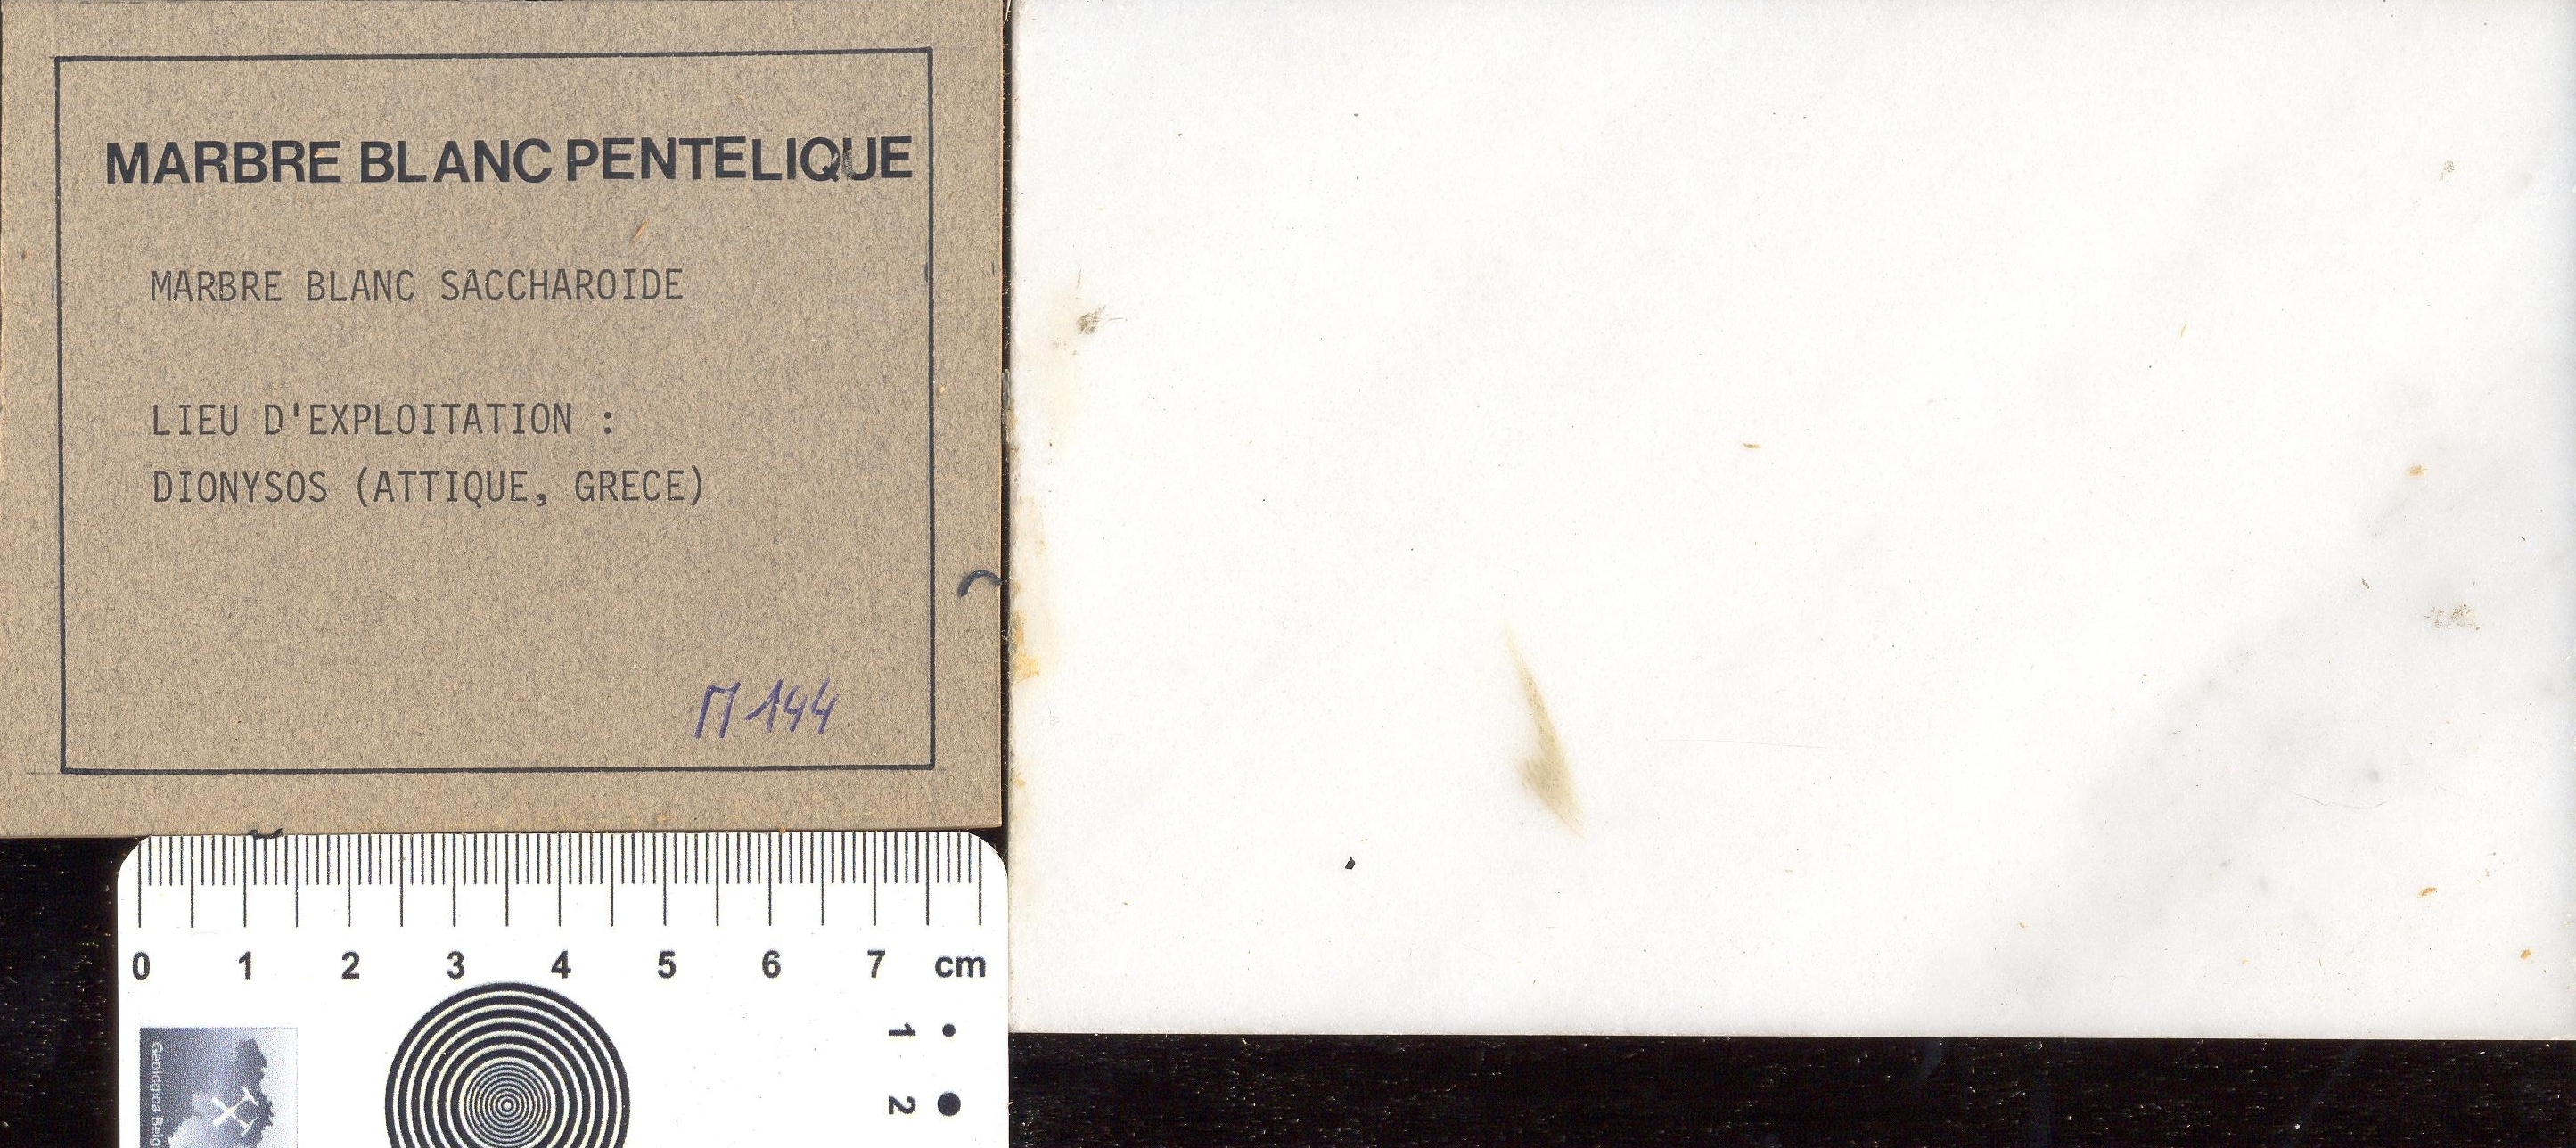 Blanc Pentilique M144